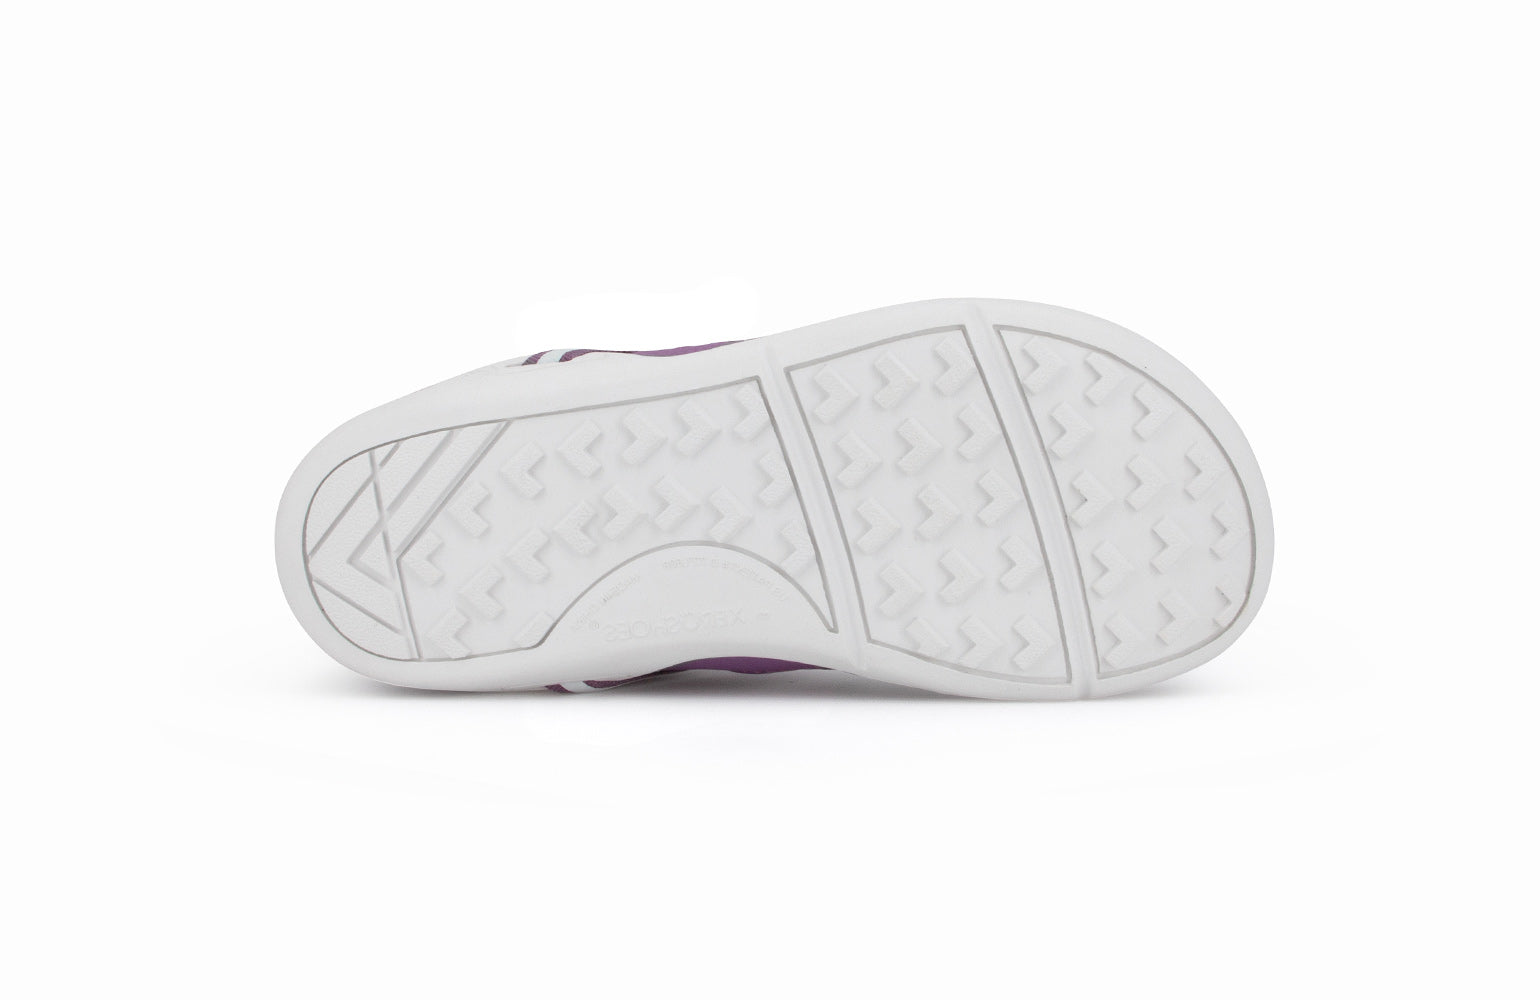 Xero Shoes Prio Kids barfods træningssko/sneakers til børn i farven violet, saal